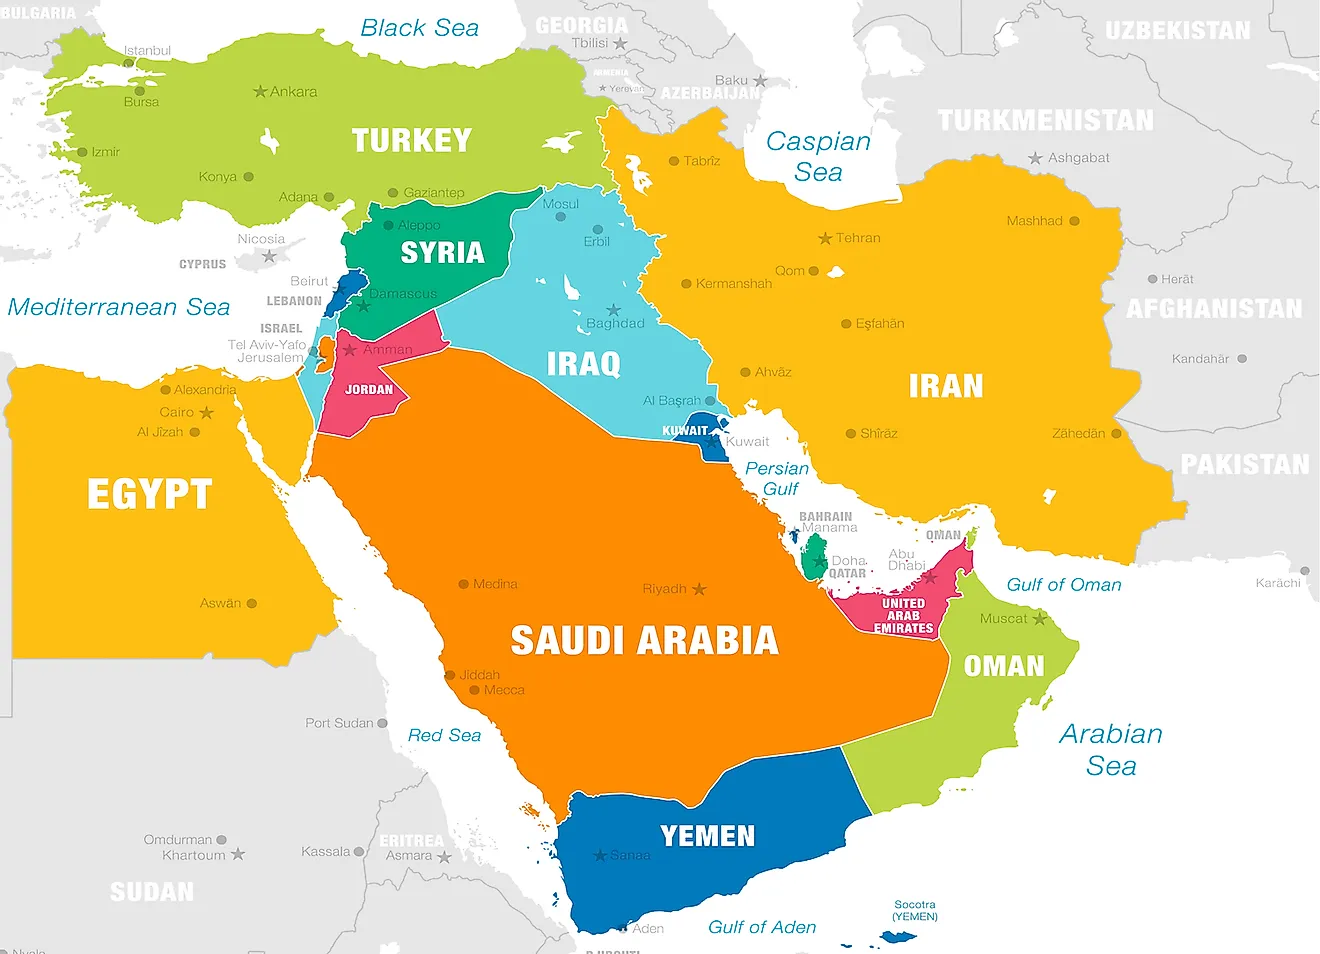 Bản đồ Trung Đông: Tìm hiểu các quốc gia tại Trung Đông với bản đồ đầy đủ thông tin về văn hóa, lịch sử và địa lý của khu vực. Khám phá những nơi du lịch nổi tiếng như Dubai, Jerusalem hay Petra với kiến trúc đẹp mắt. Đừng bỏ lỡ được những trải nghiệm tuyệt vời tại Trung Đông.